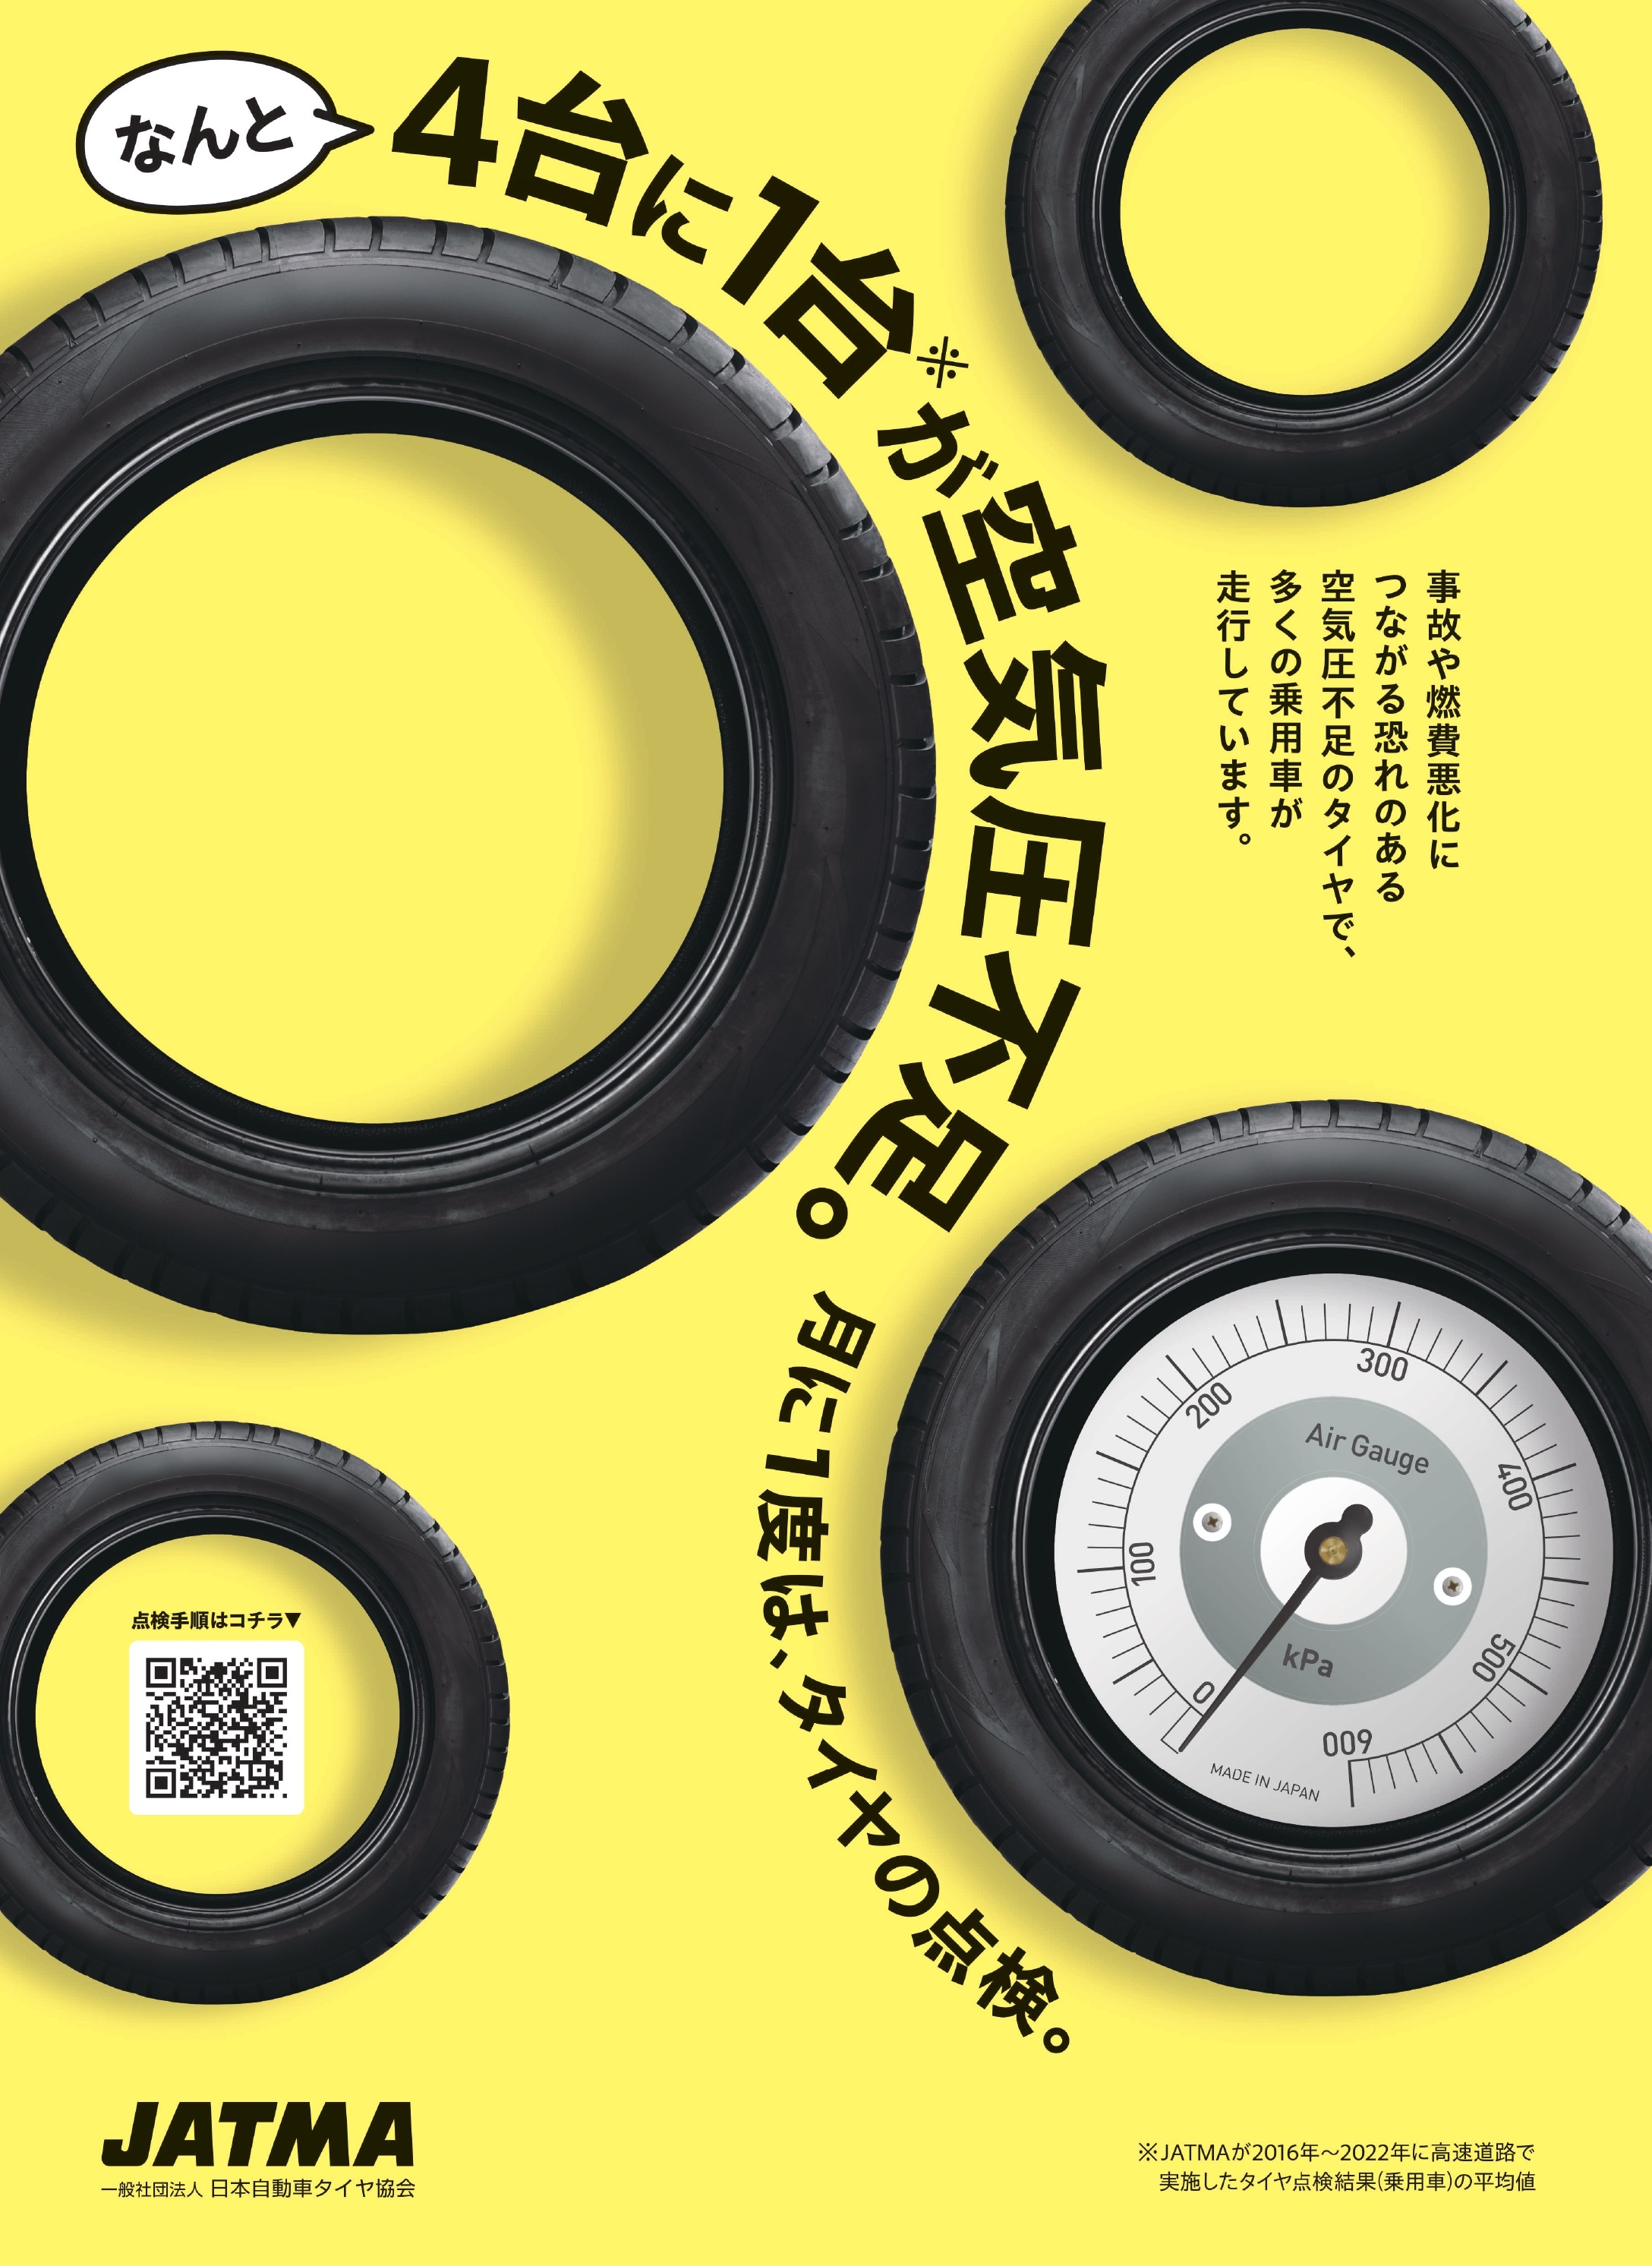 タイヤの日のタイヤ点検ポスター(ＱＲコードからも空気圧点検手順 のイラストが閲覧できる)